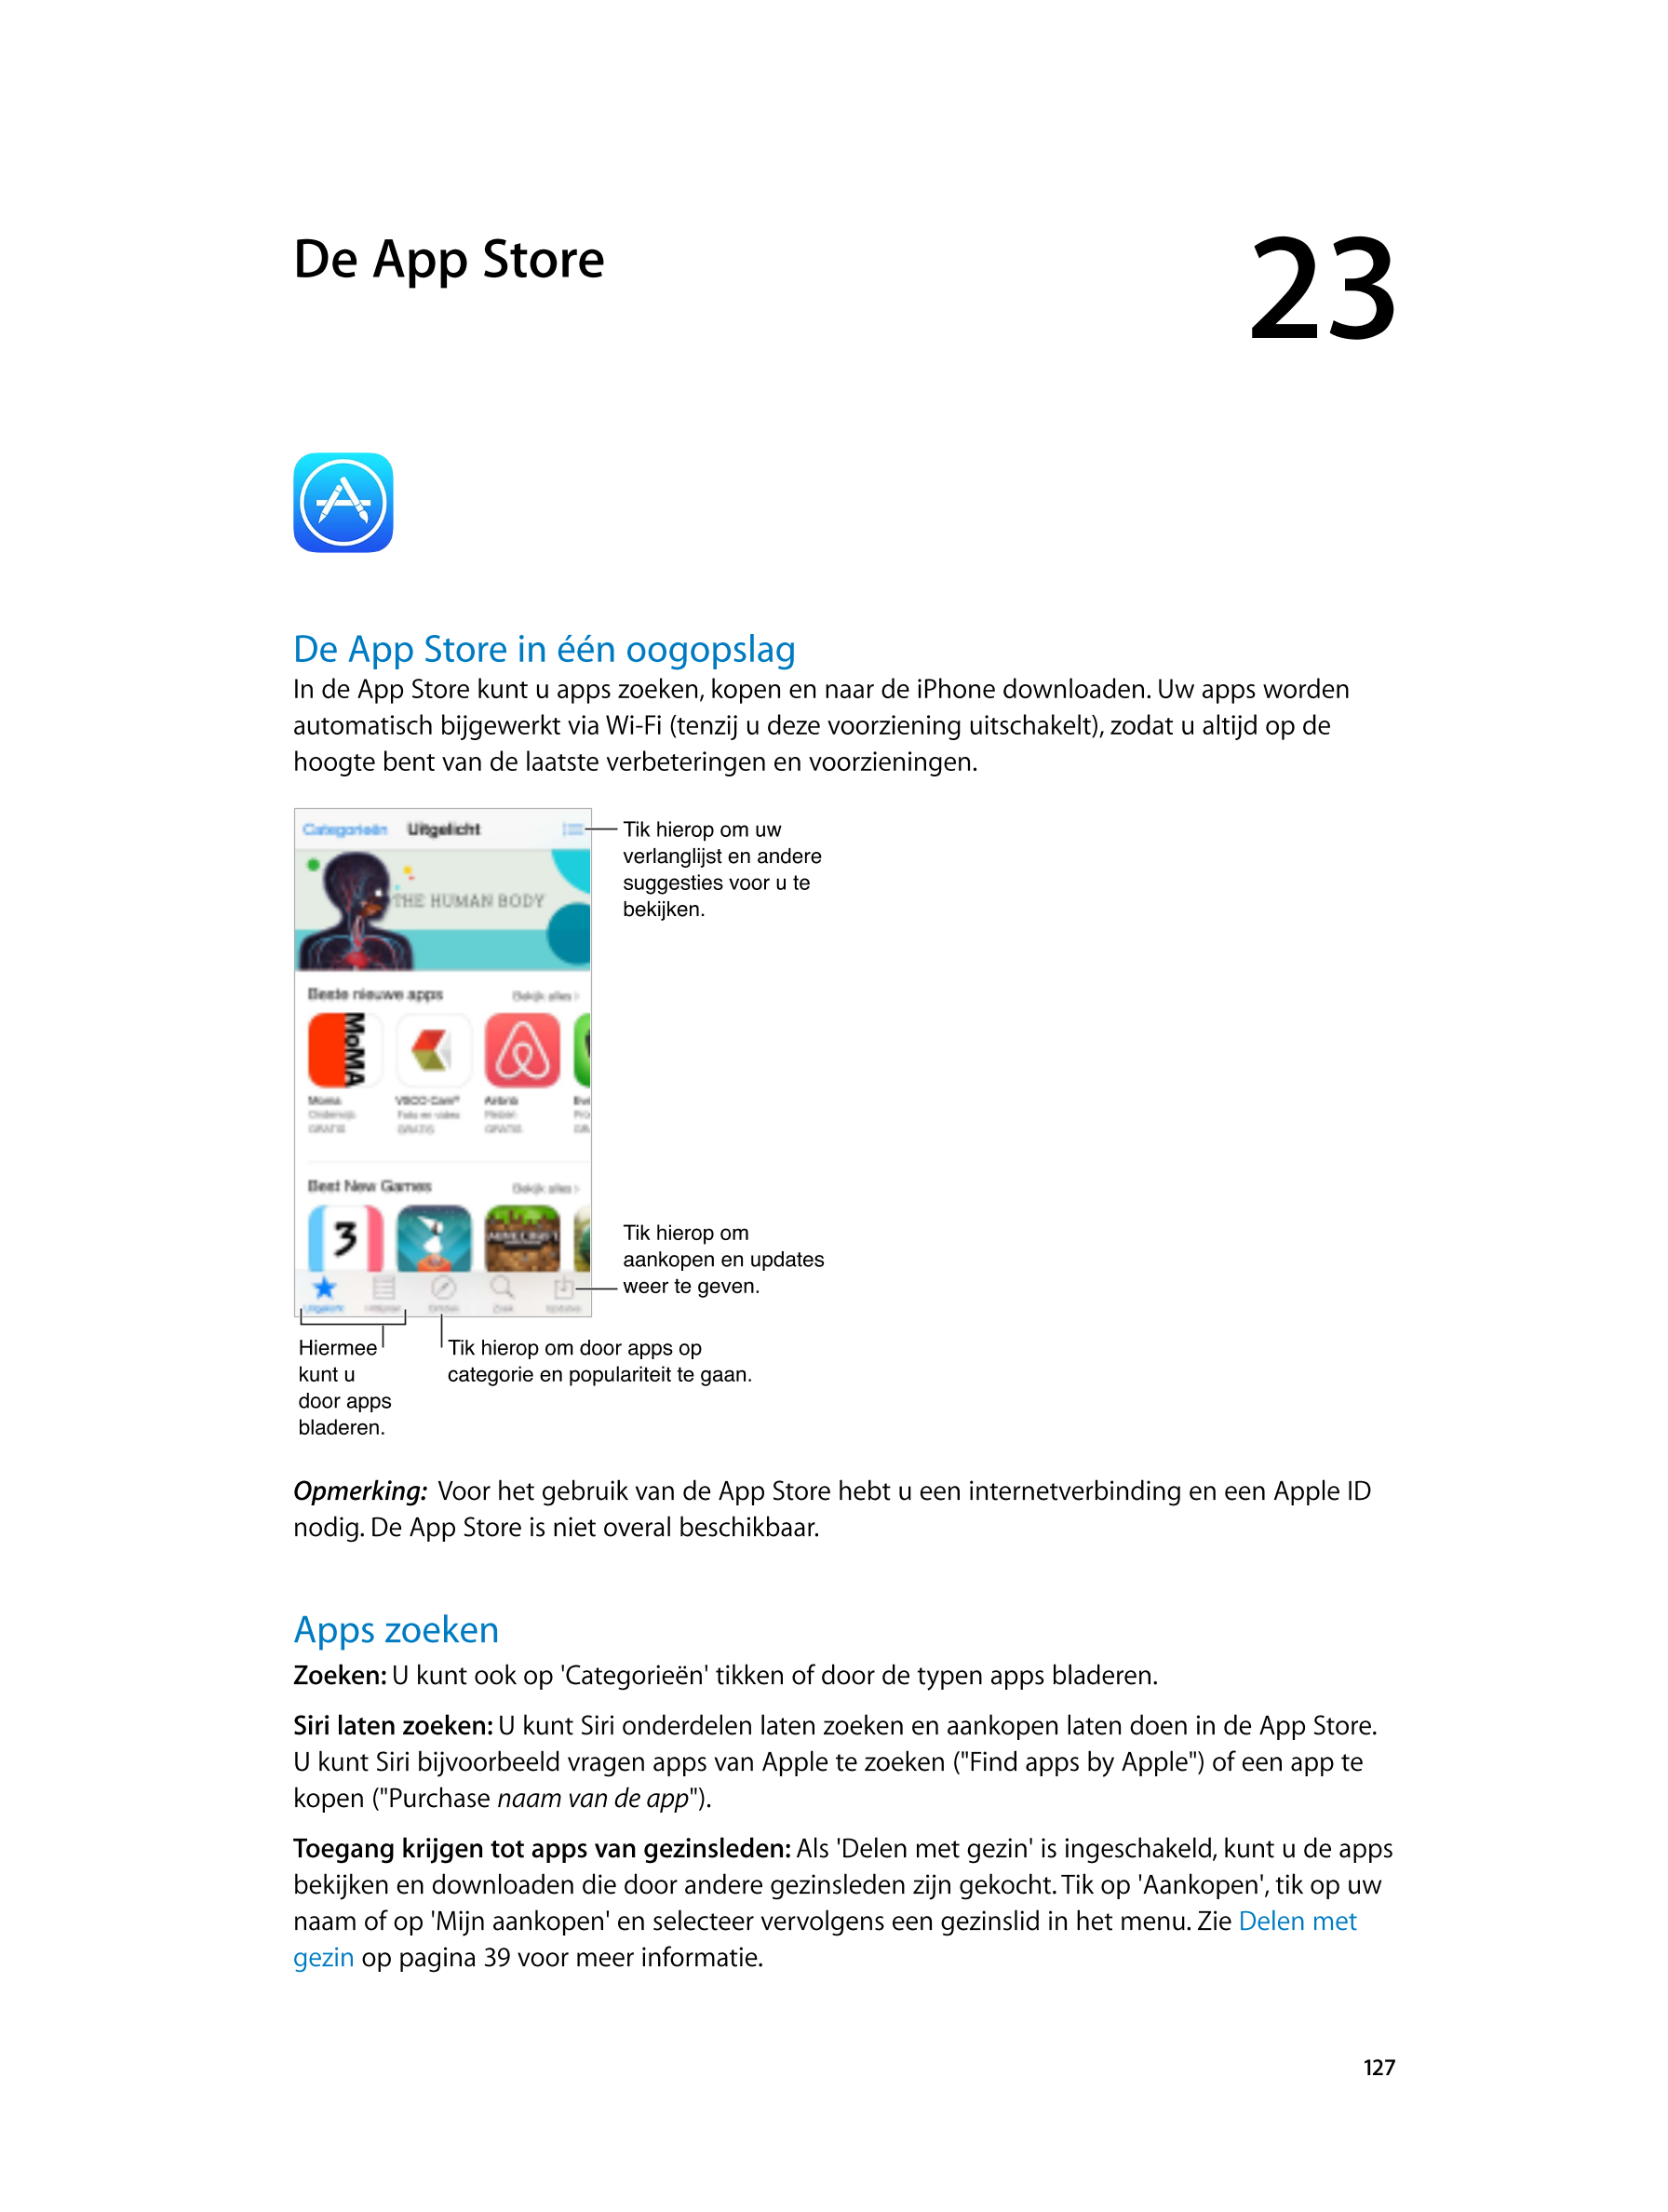   De App Store 23
De App Store in één oogopslag
In de App Store kunt u apps zoeken, kopen en naar de iPhone downloaden. Uw apps 